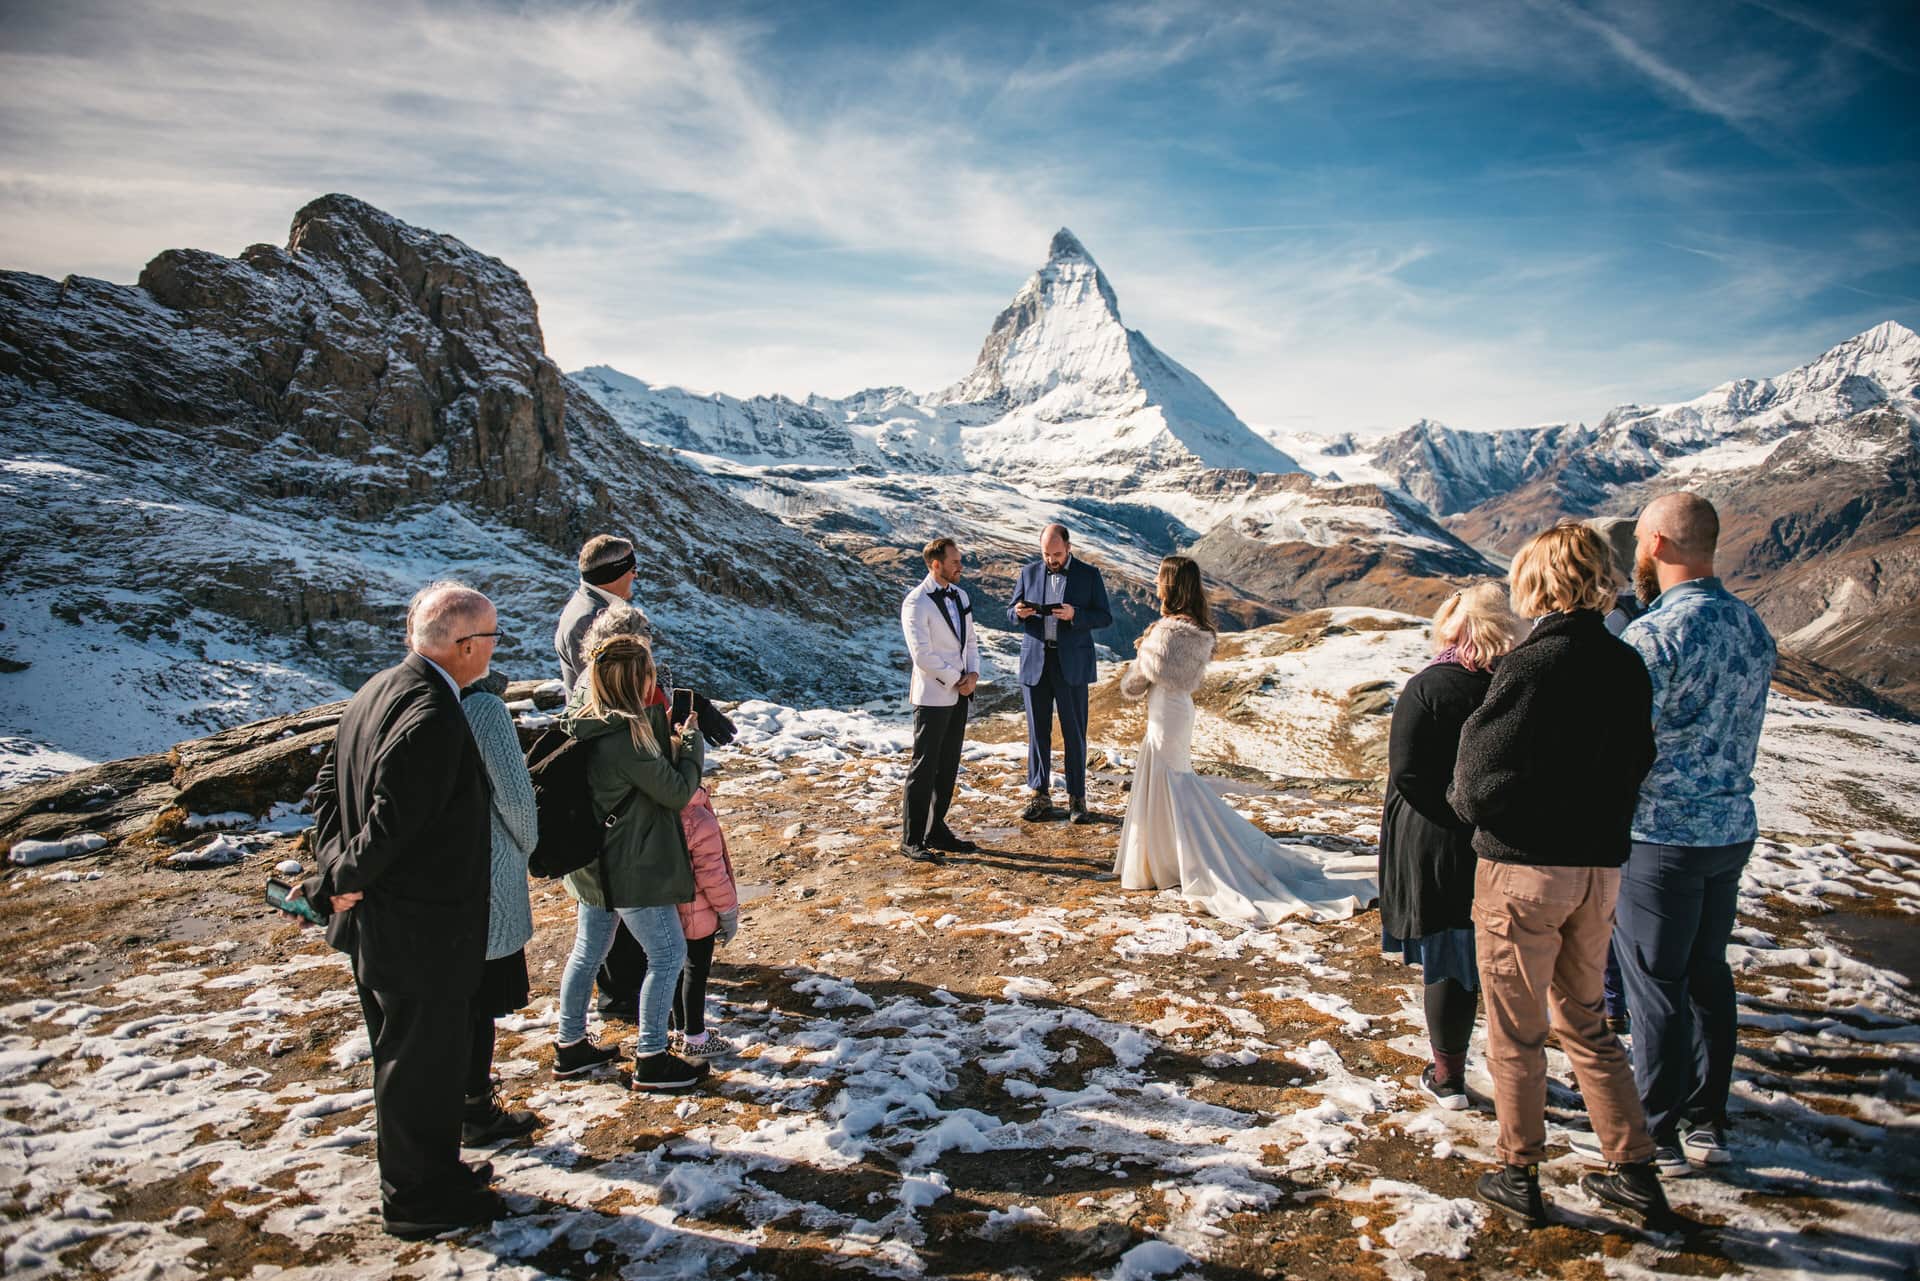 Elopement ceremony in Zermatt